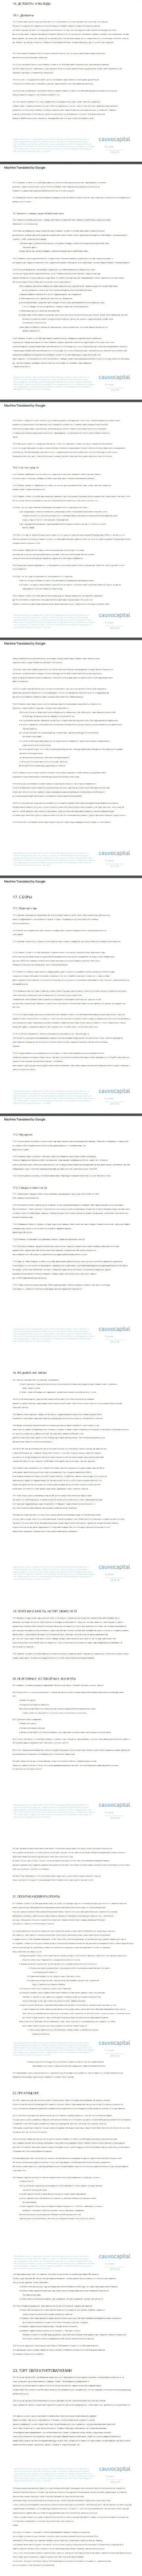 Часть третья пользовательского соглашения форекс-дилинговой компании Cauvo Capital